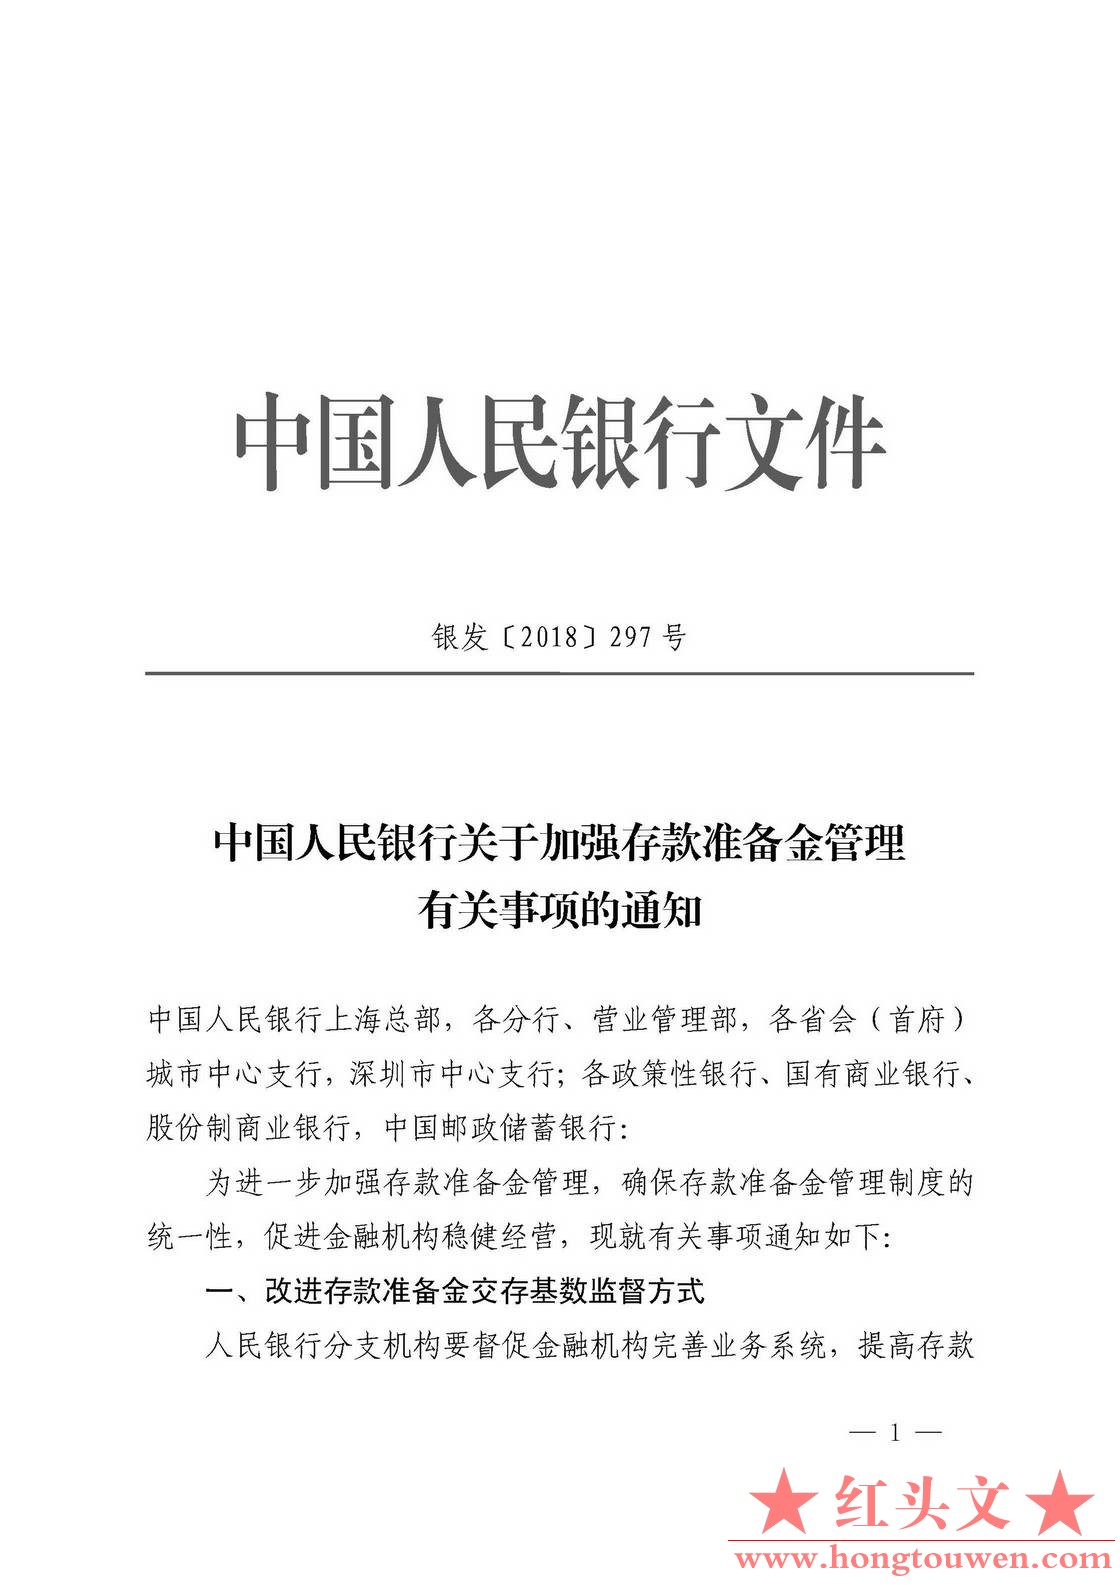 银发[2018]297号-中国人民银行关于加强存款准备金管理有关事项的通知_页面_1.jpg.jpg